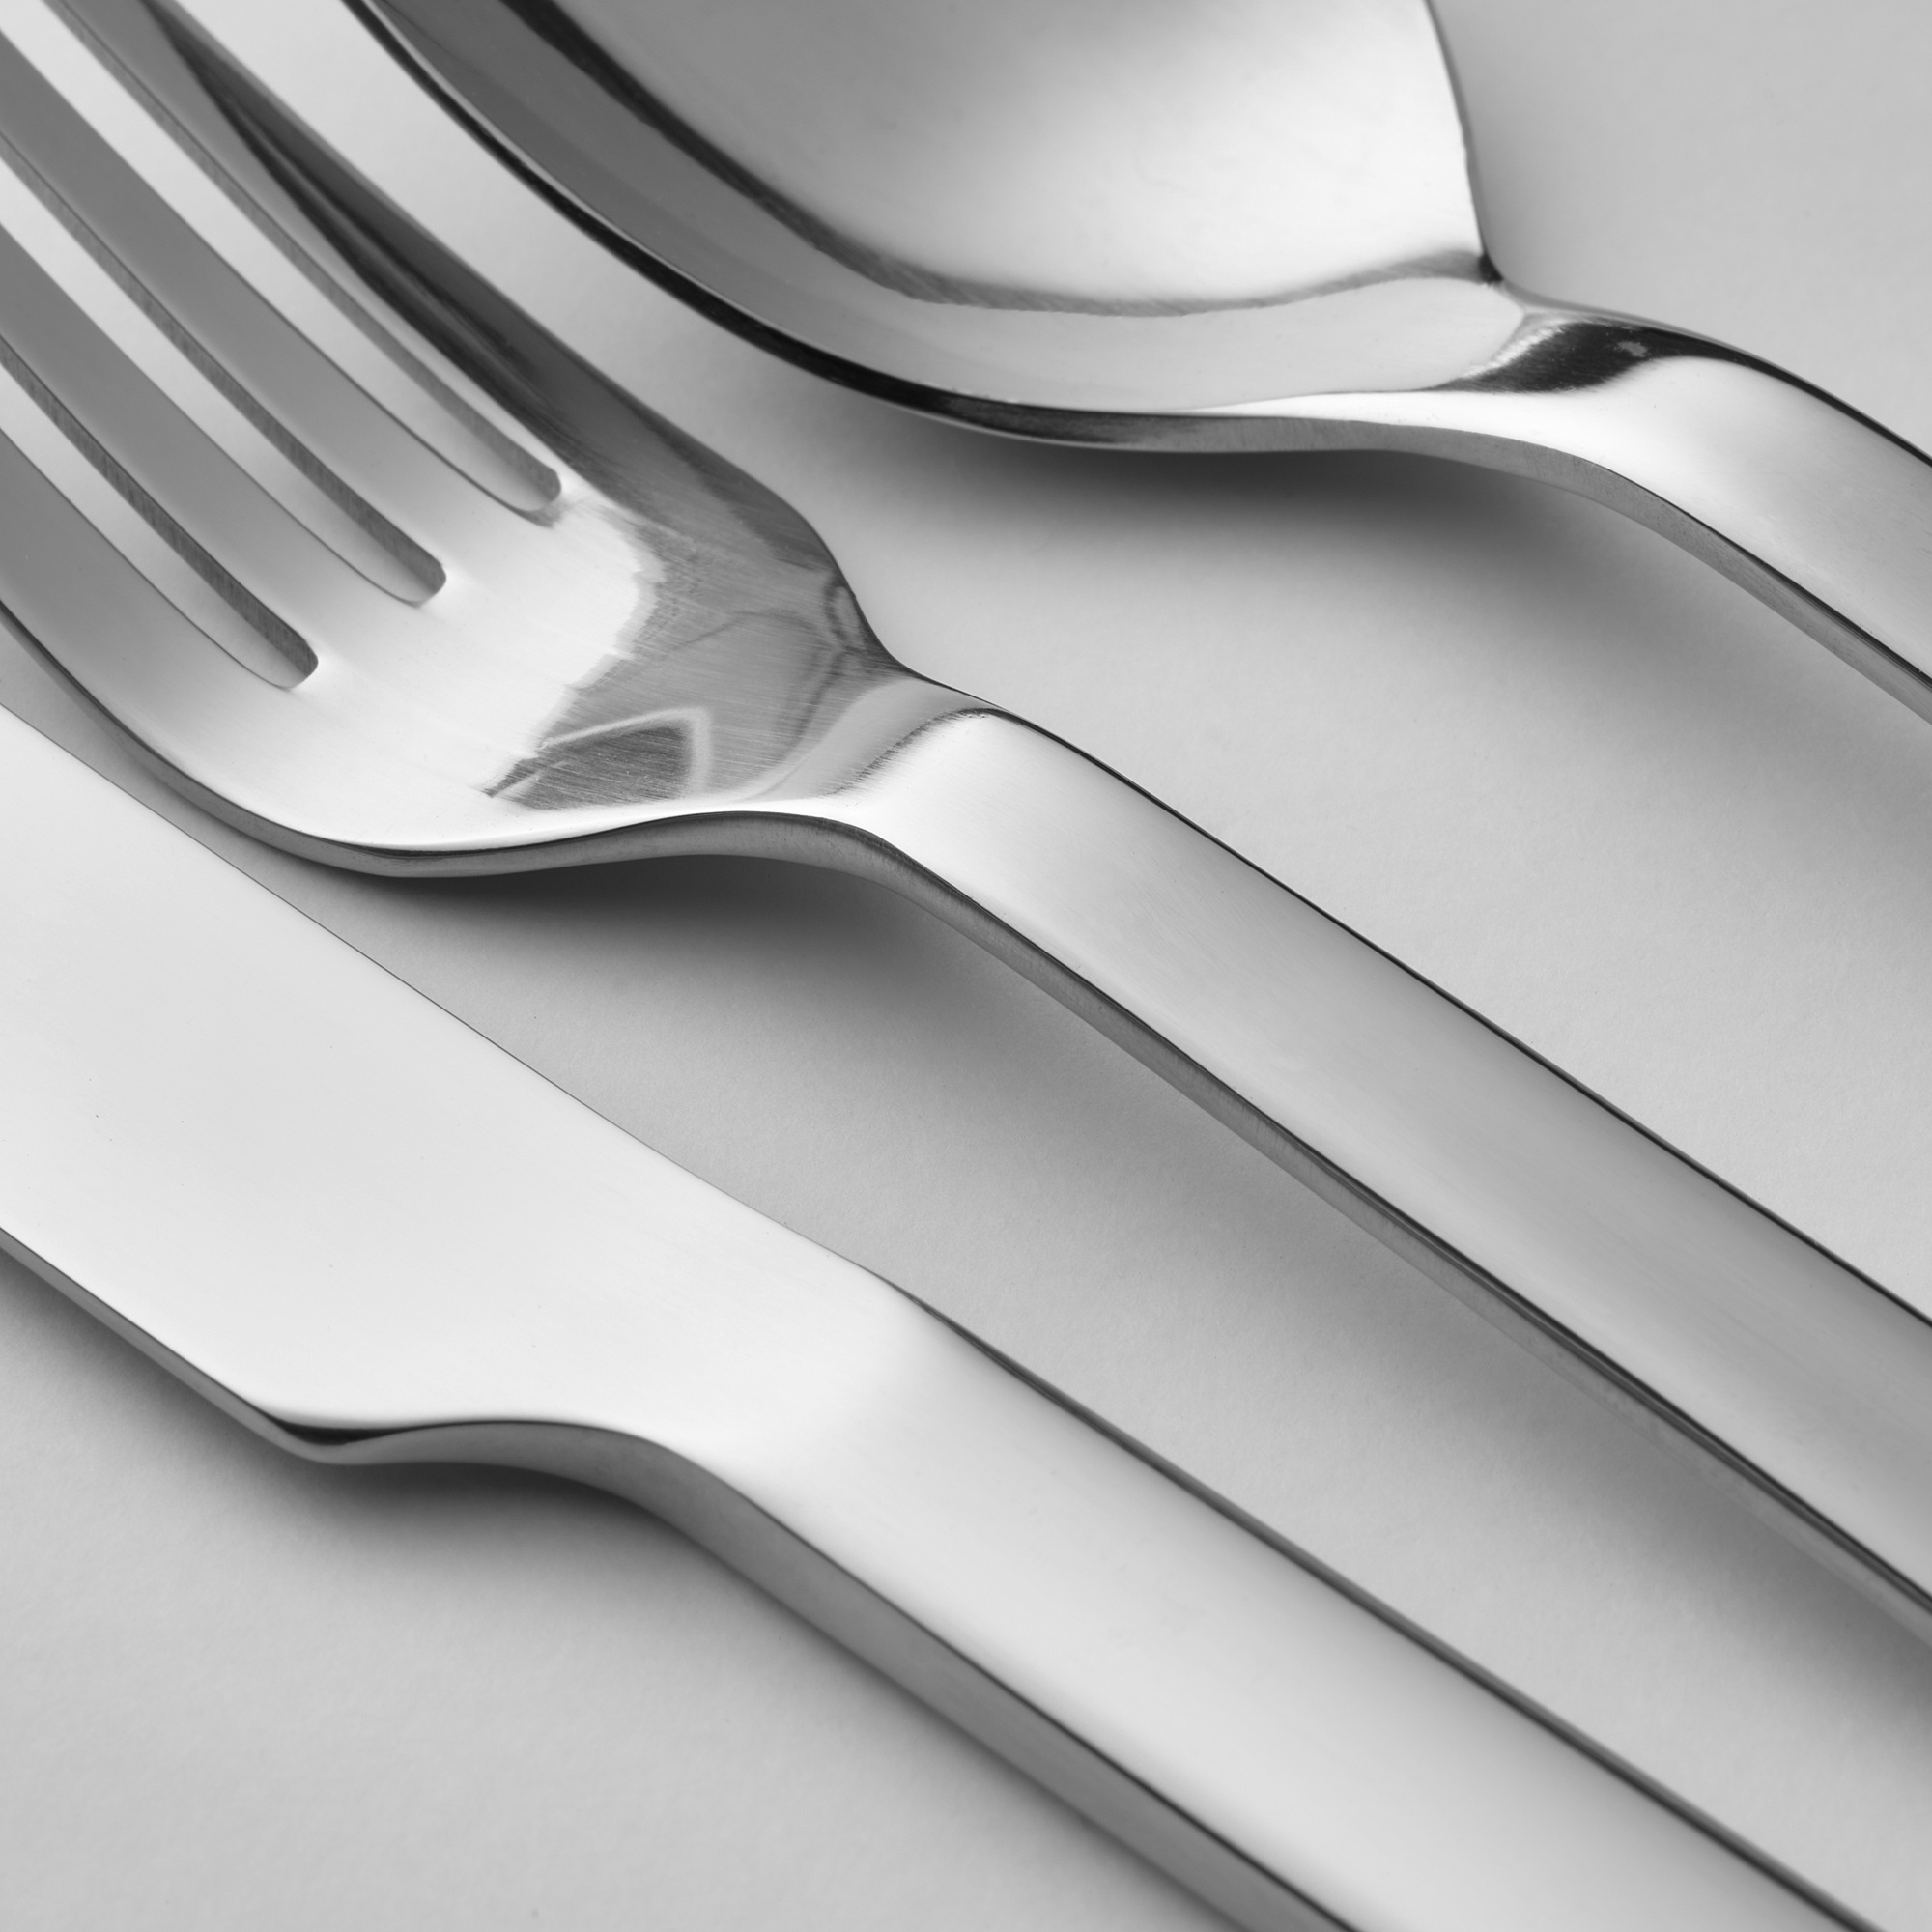 FINSKUREN travel cutlery with case